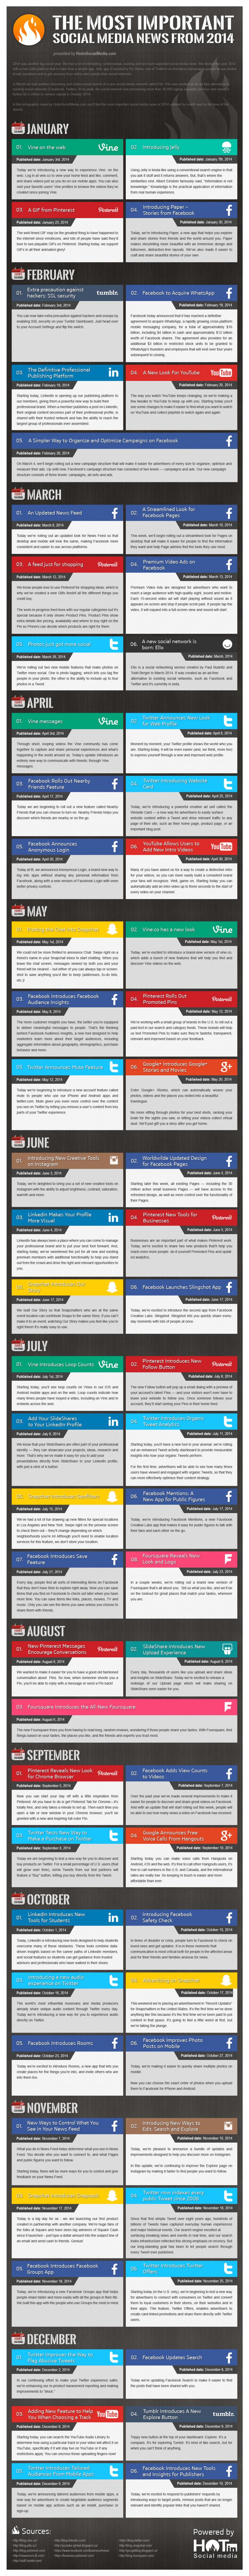 Noticias y eventos más destacados del 2014 en Social Media (infografía)